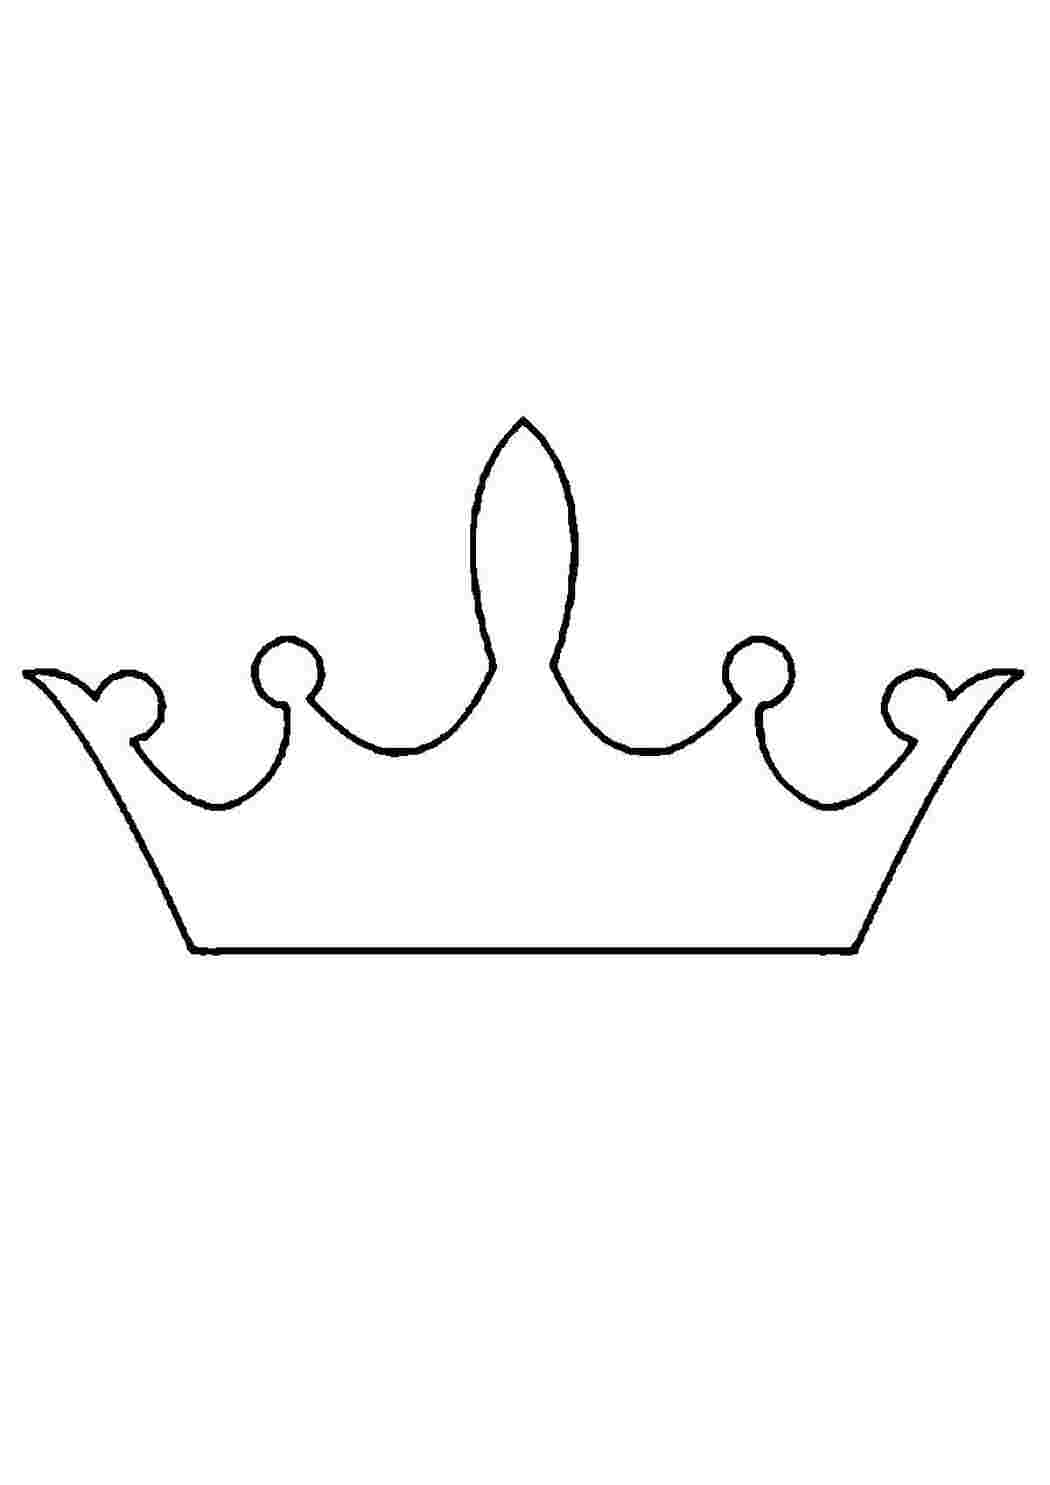 Изображения по запросу Корона рисунок